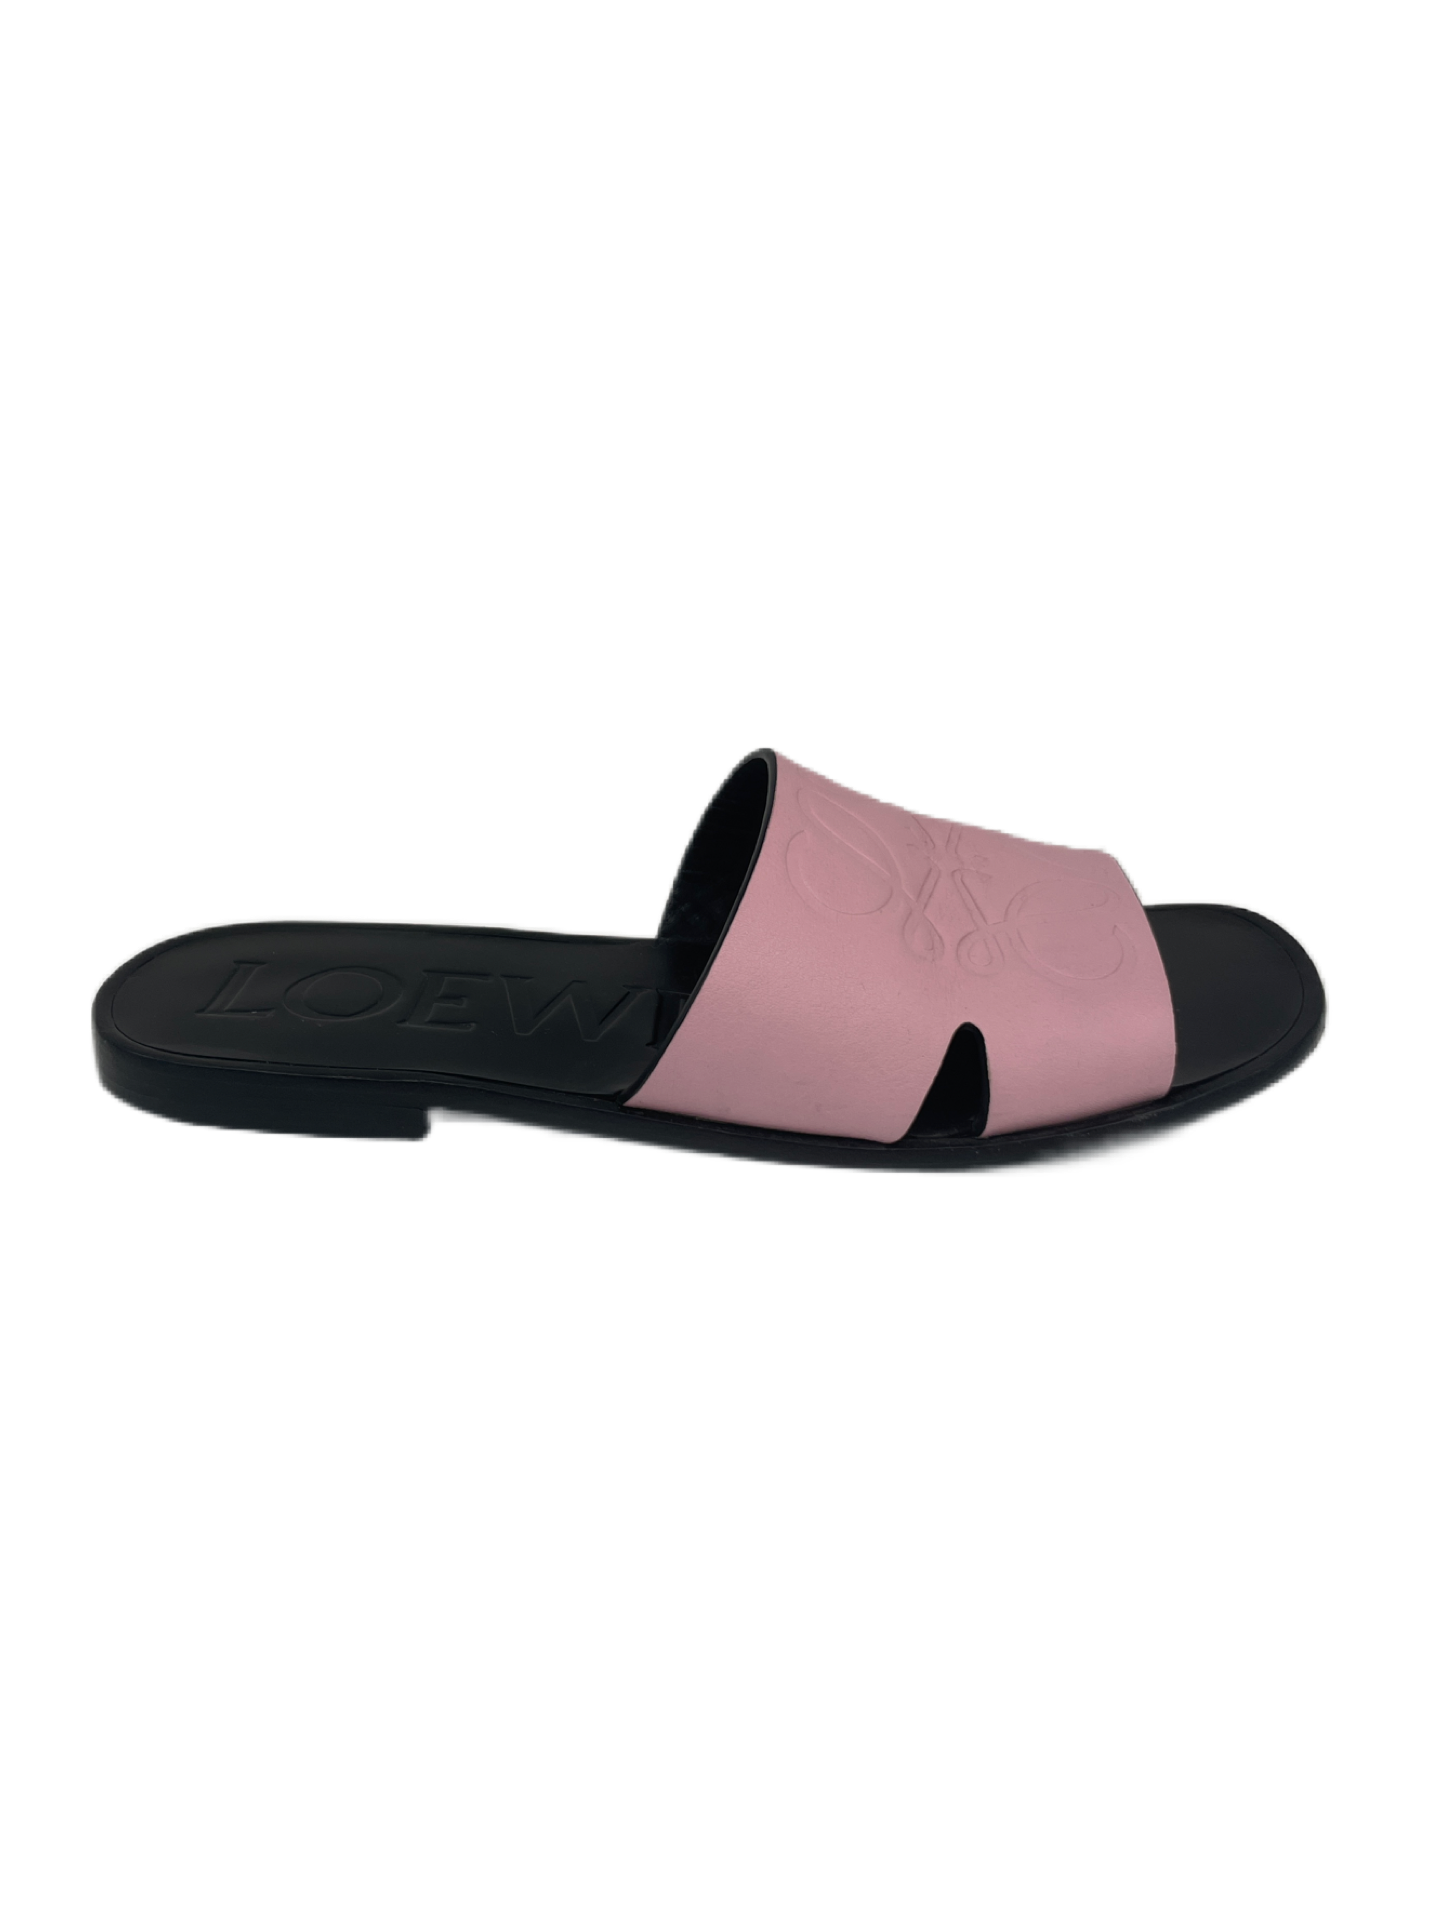 Loewe Pink Slides. Size: 39